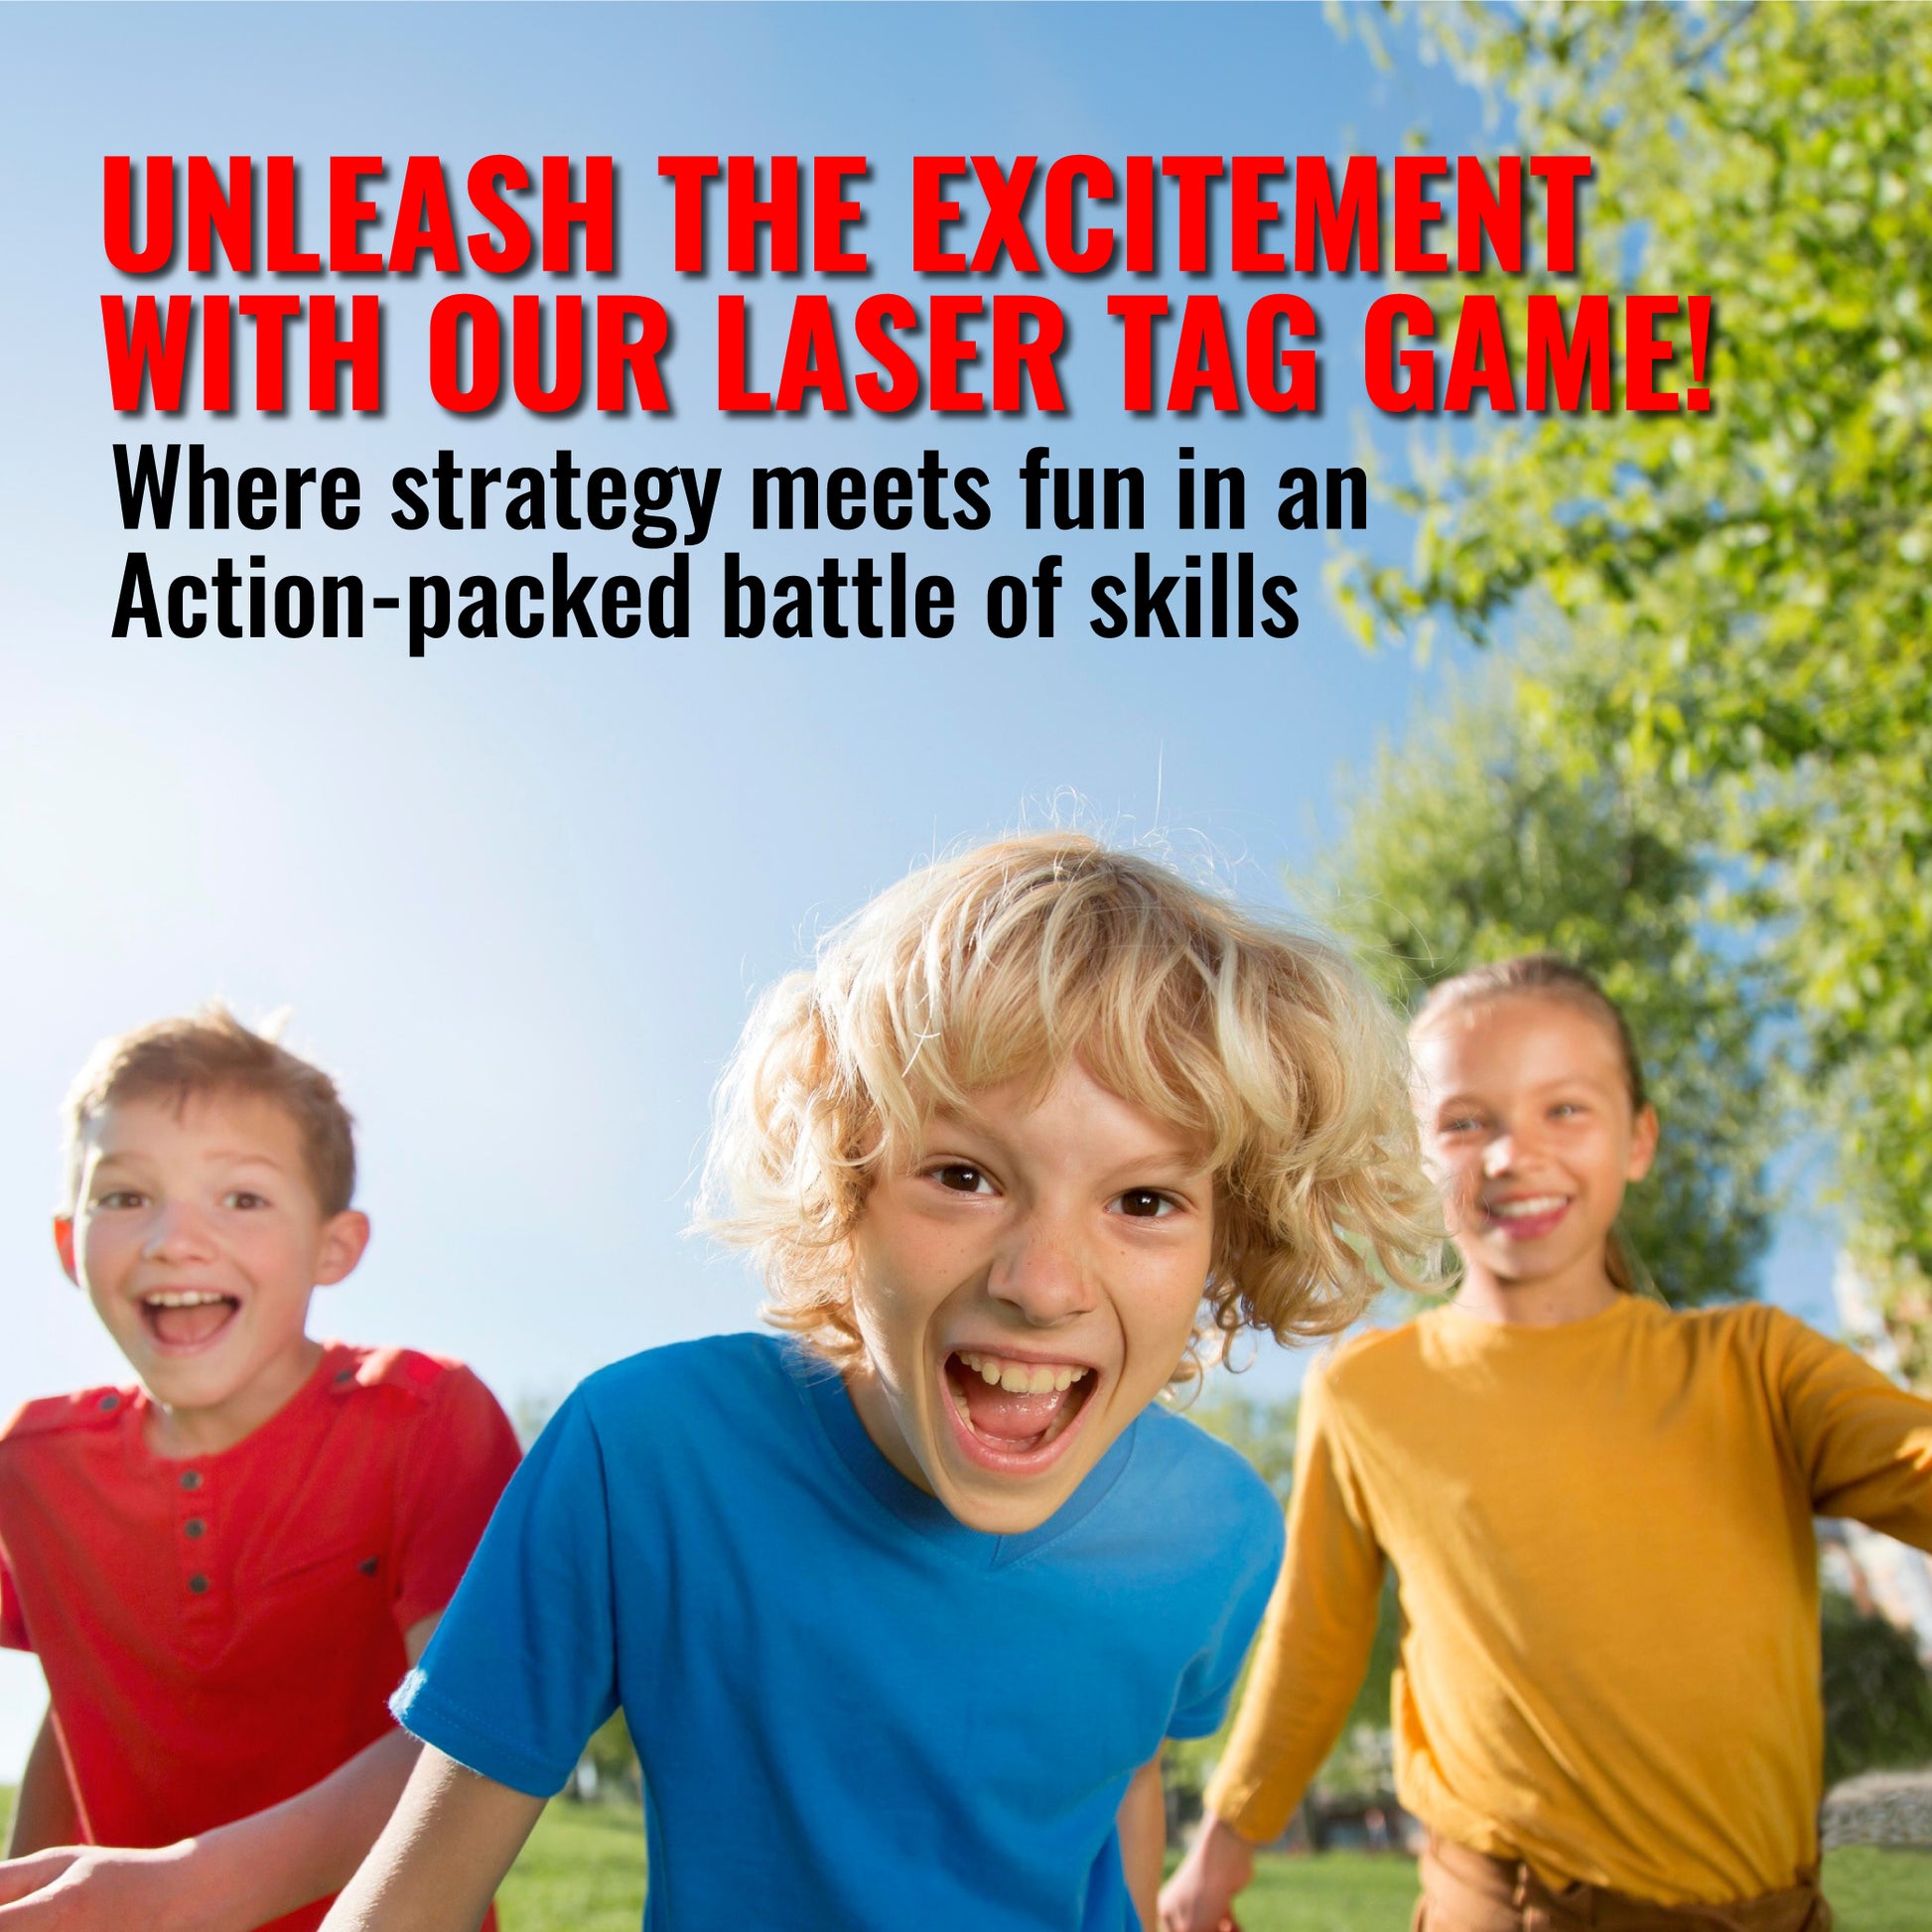 Soirée Laser Game, Special Kids (ex Royal Kids) à Lieusaint